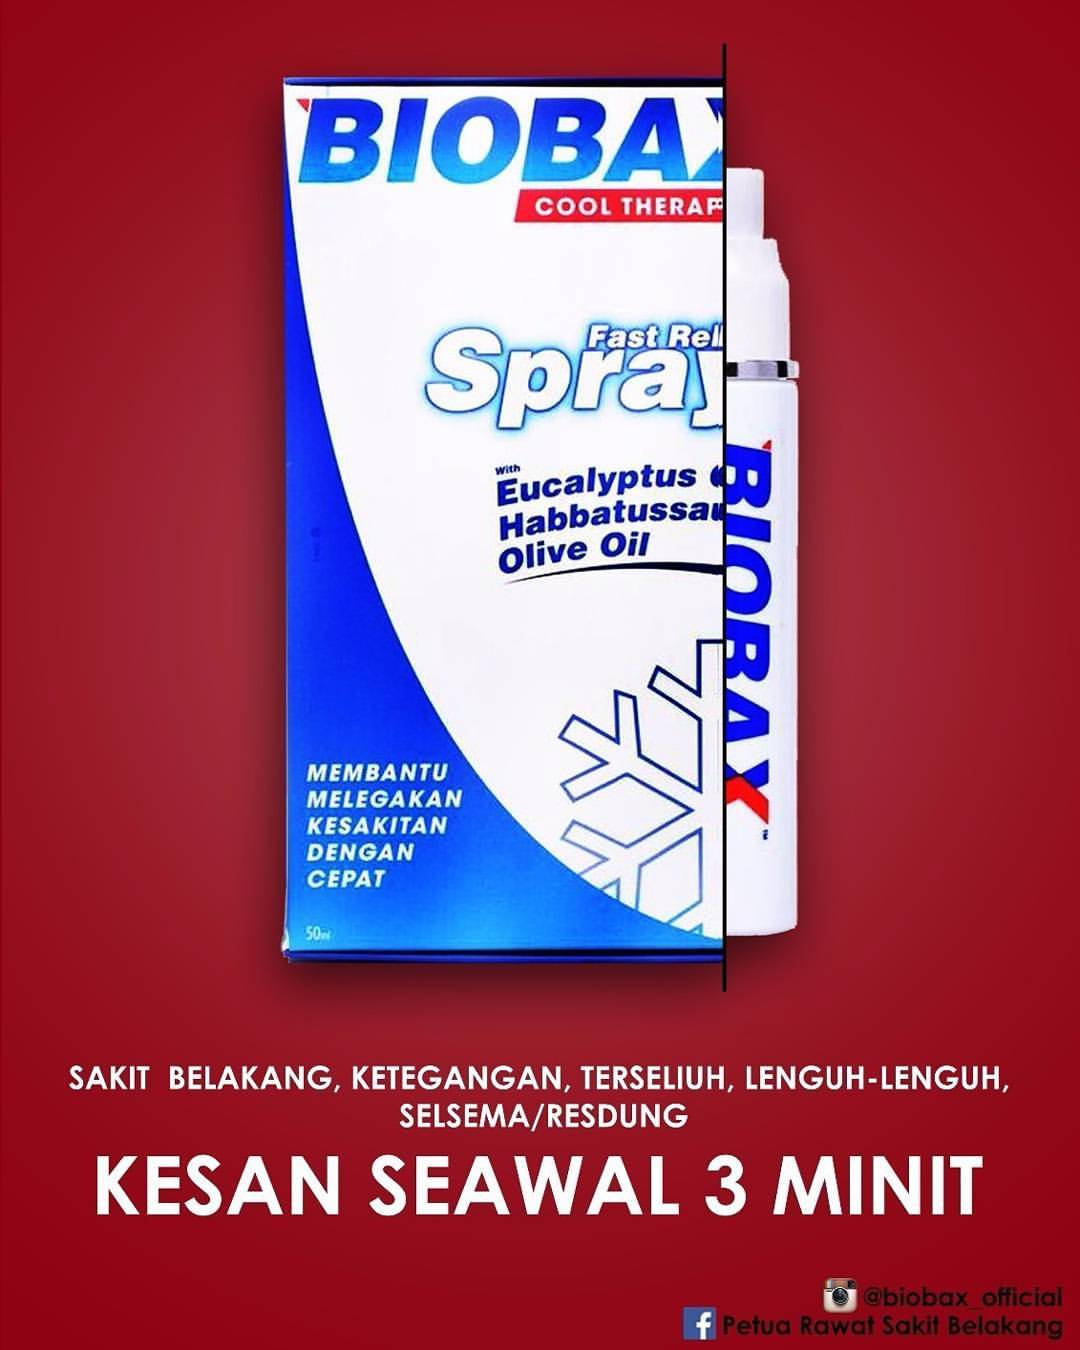 Biobax Spray - melegakan, mengurangkan & menyembuhkan sakit belakang & sakit pinggang